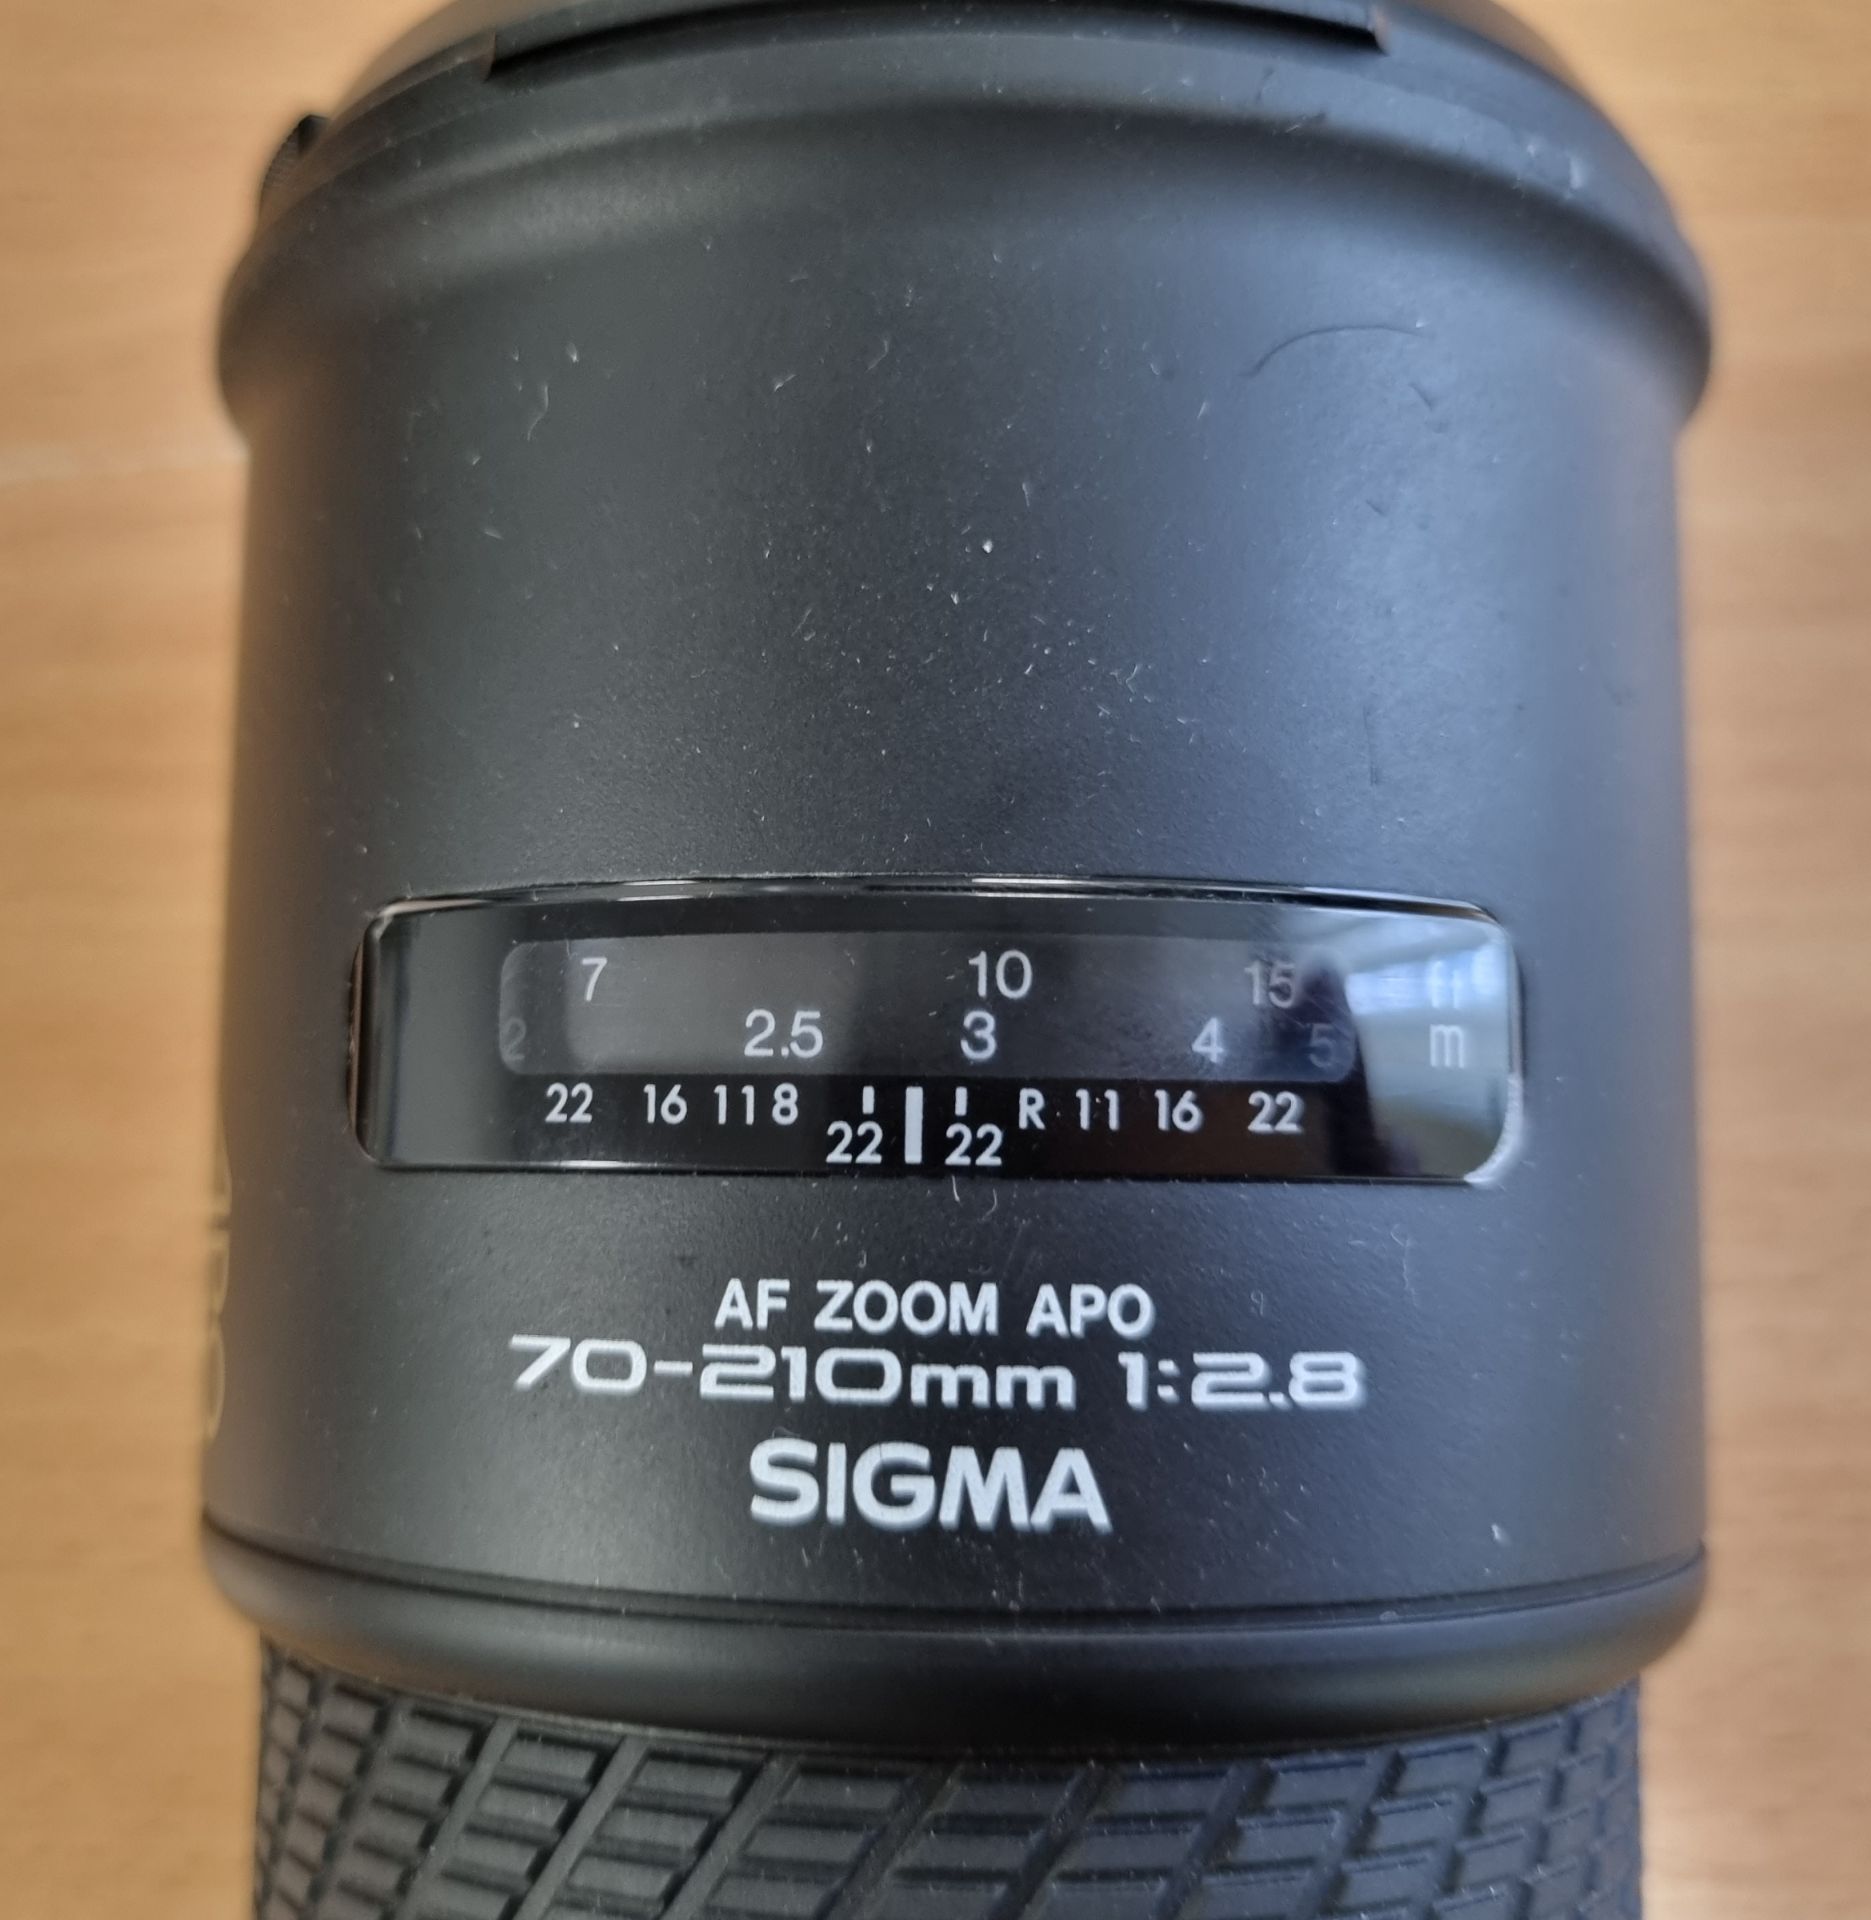 Sigma AF Zoom APO 70-210mm f/2.8 A-mount lens - Image 4 of 6